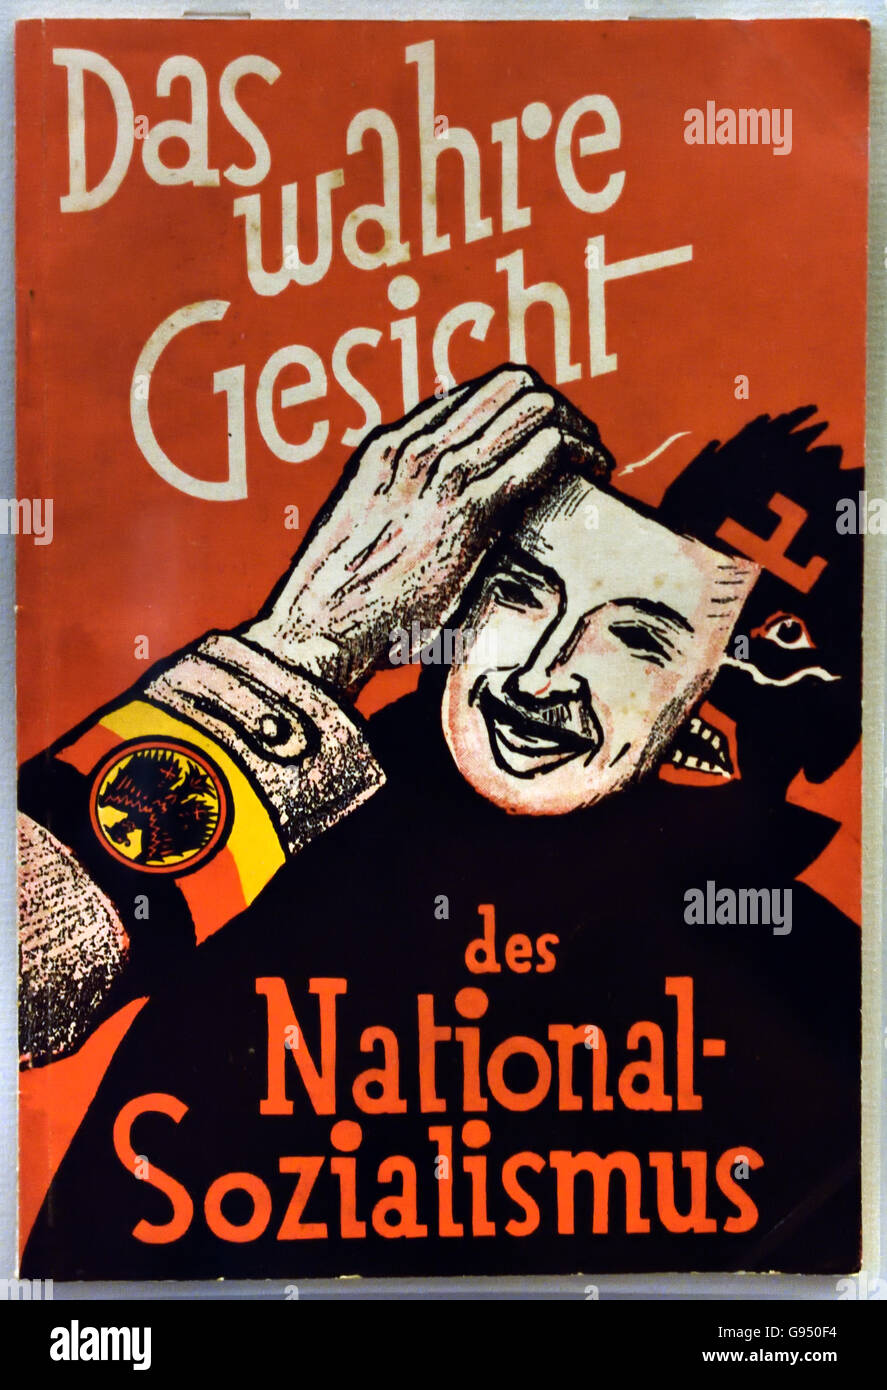 Das Wahre Gesicht des Sozialismus Nazione - Il vero volto del socialismo nazionale Otto Horsing 1874-1937 Berlino Germania nazista Foto Stock